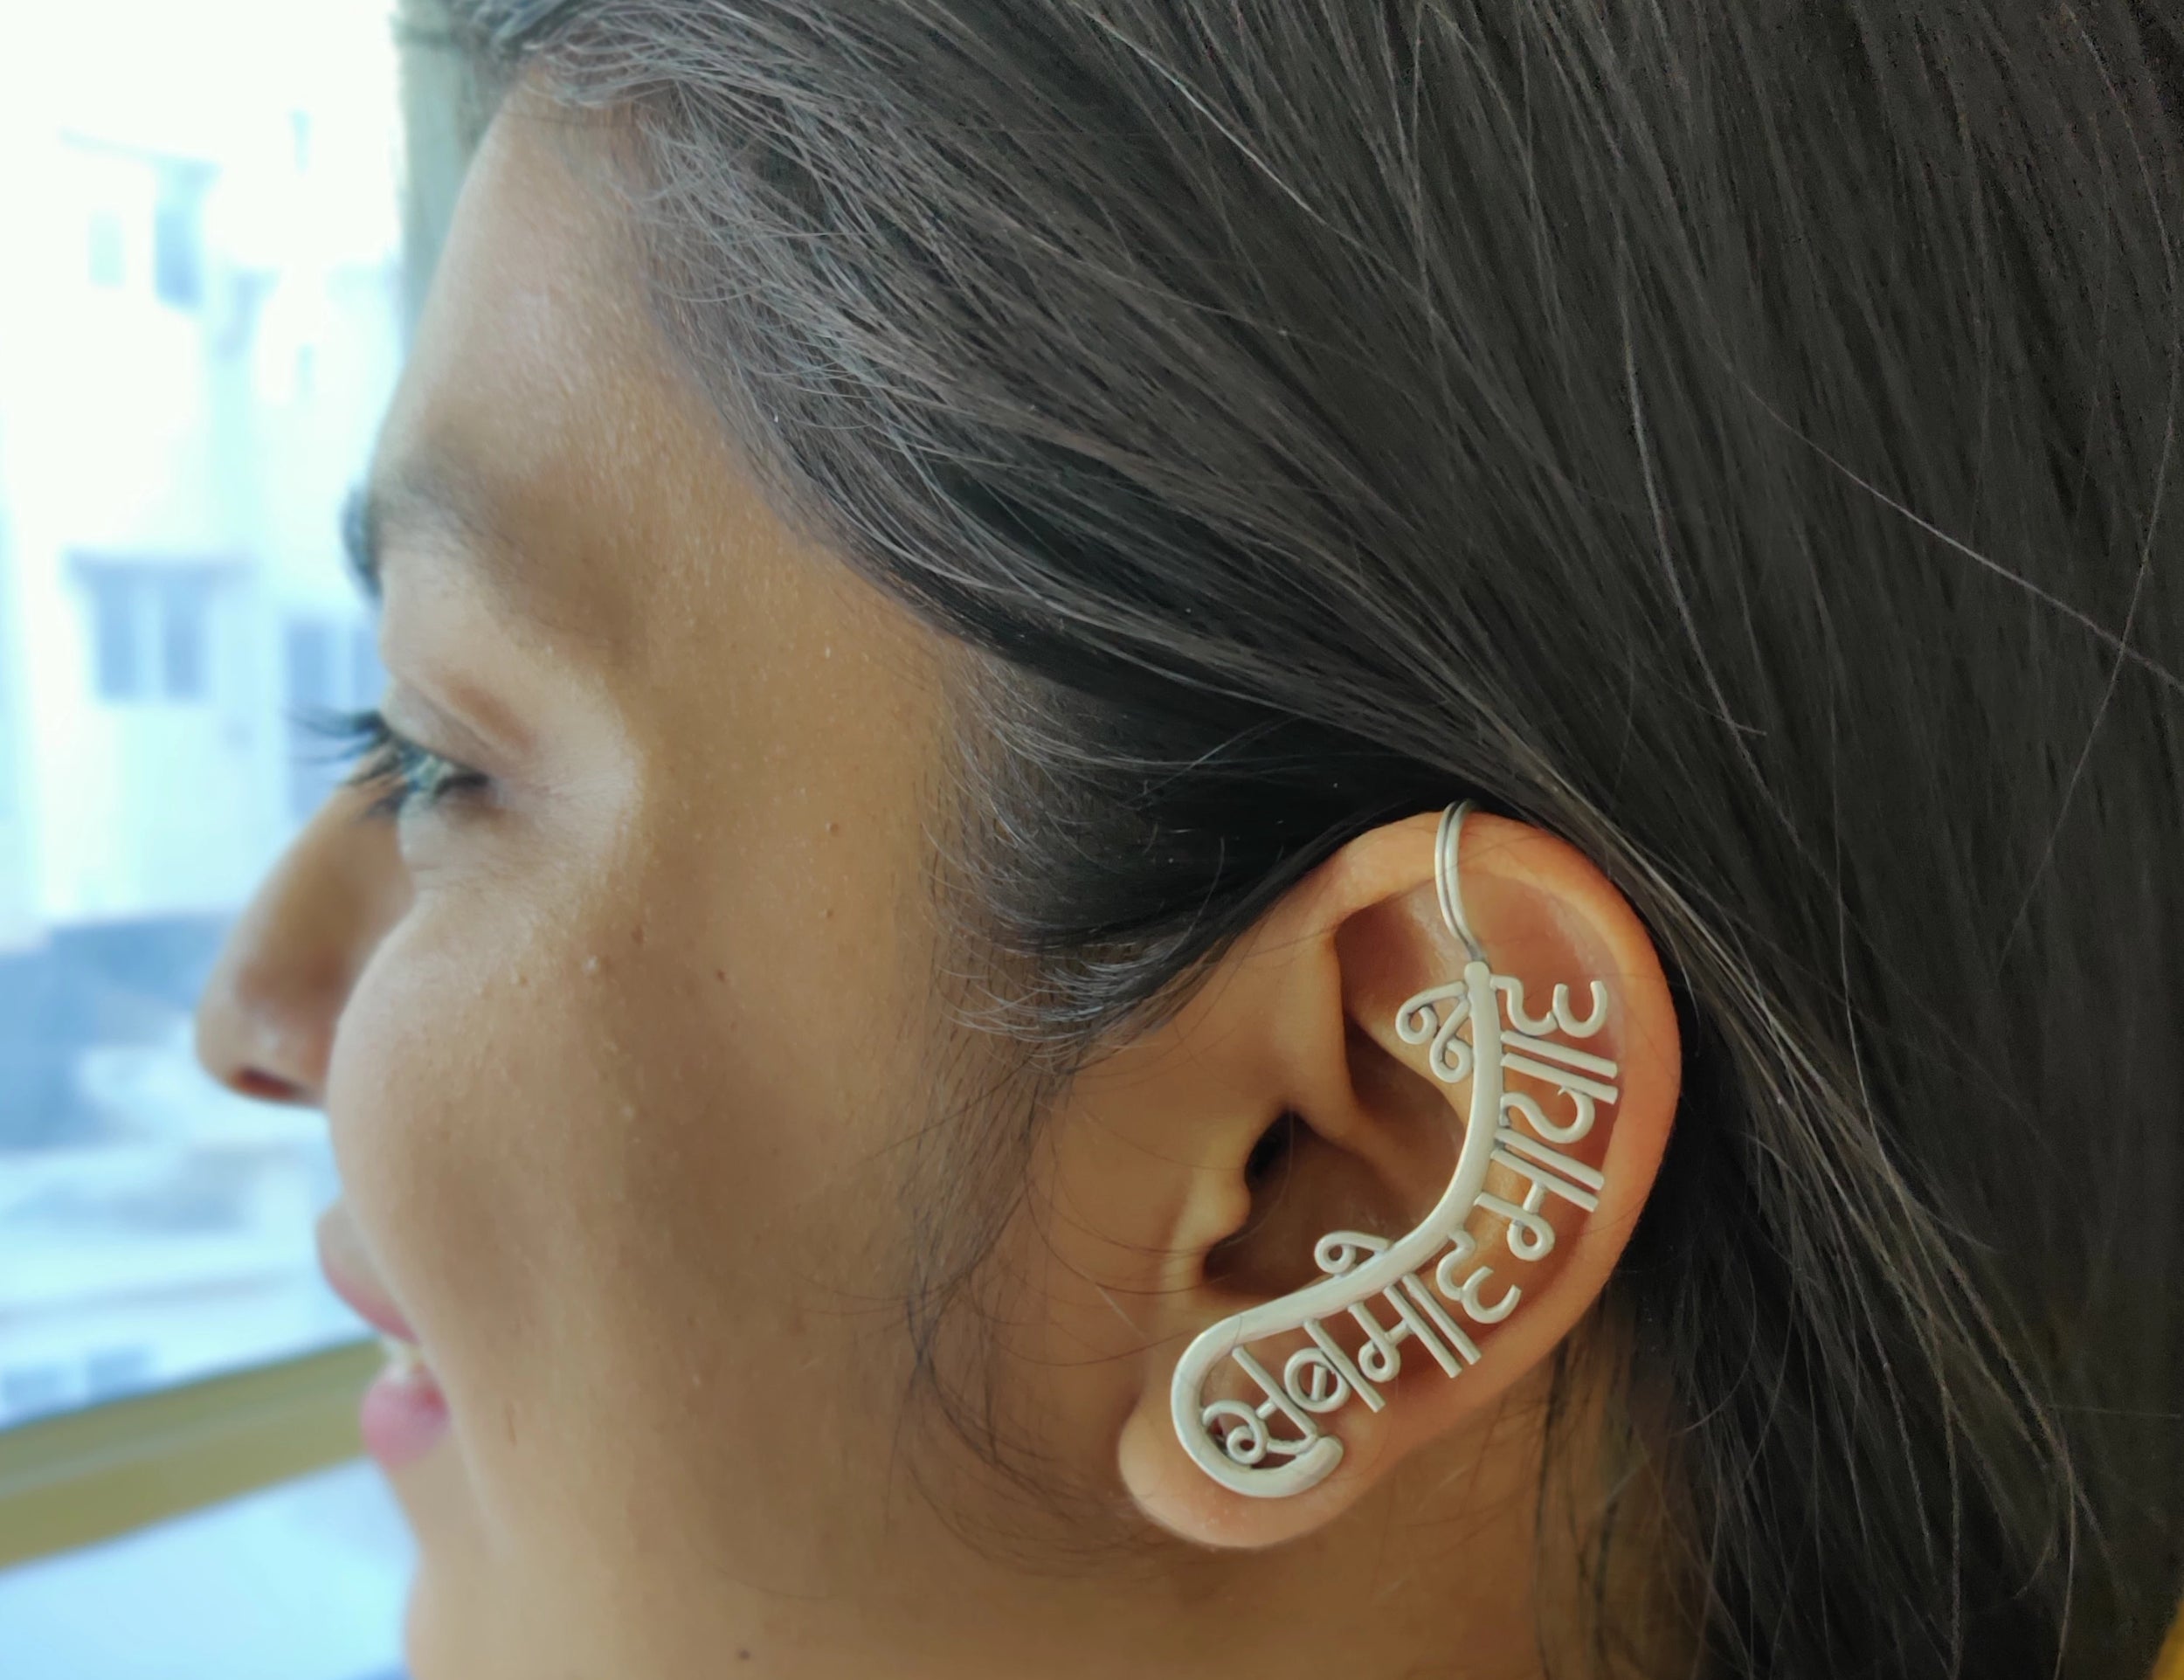 Buy Stylish Silver Ear Cuffs Online - Sab Moh Maya Hai - Earcuff by Quirksmith